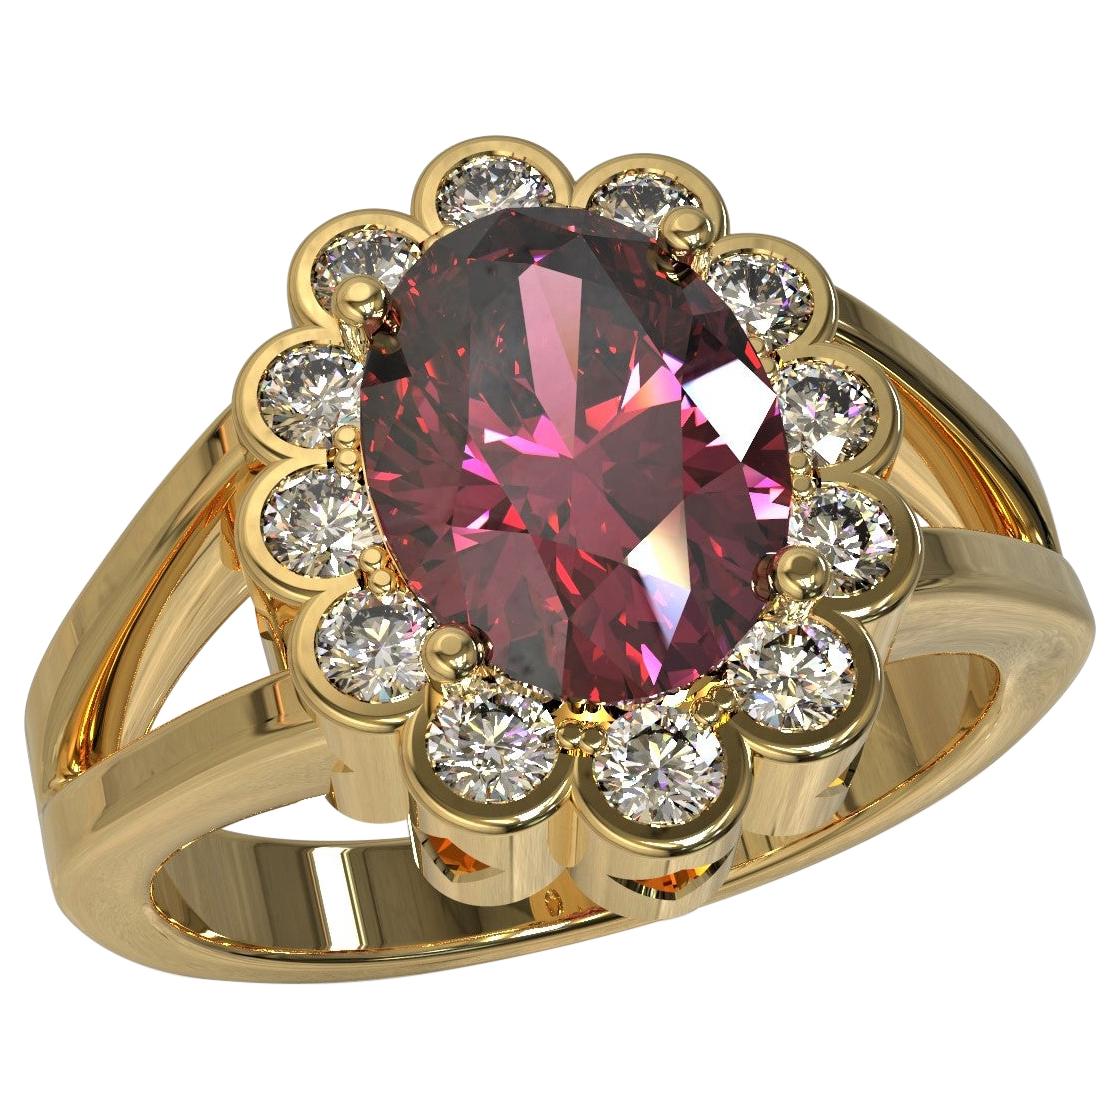 Kian Design 2.03 Carat Oval Rhodolite Diamonds Cocktail Ring in 18 Carat Gold